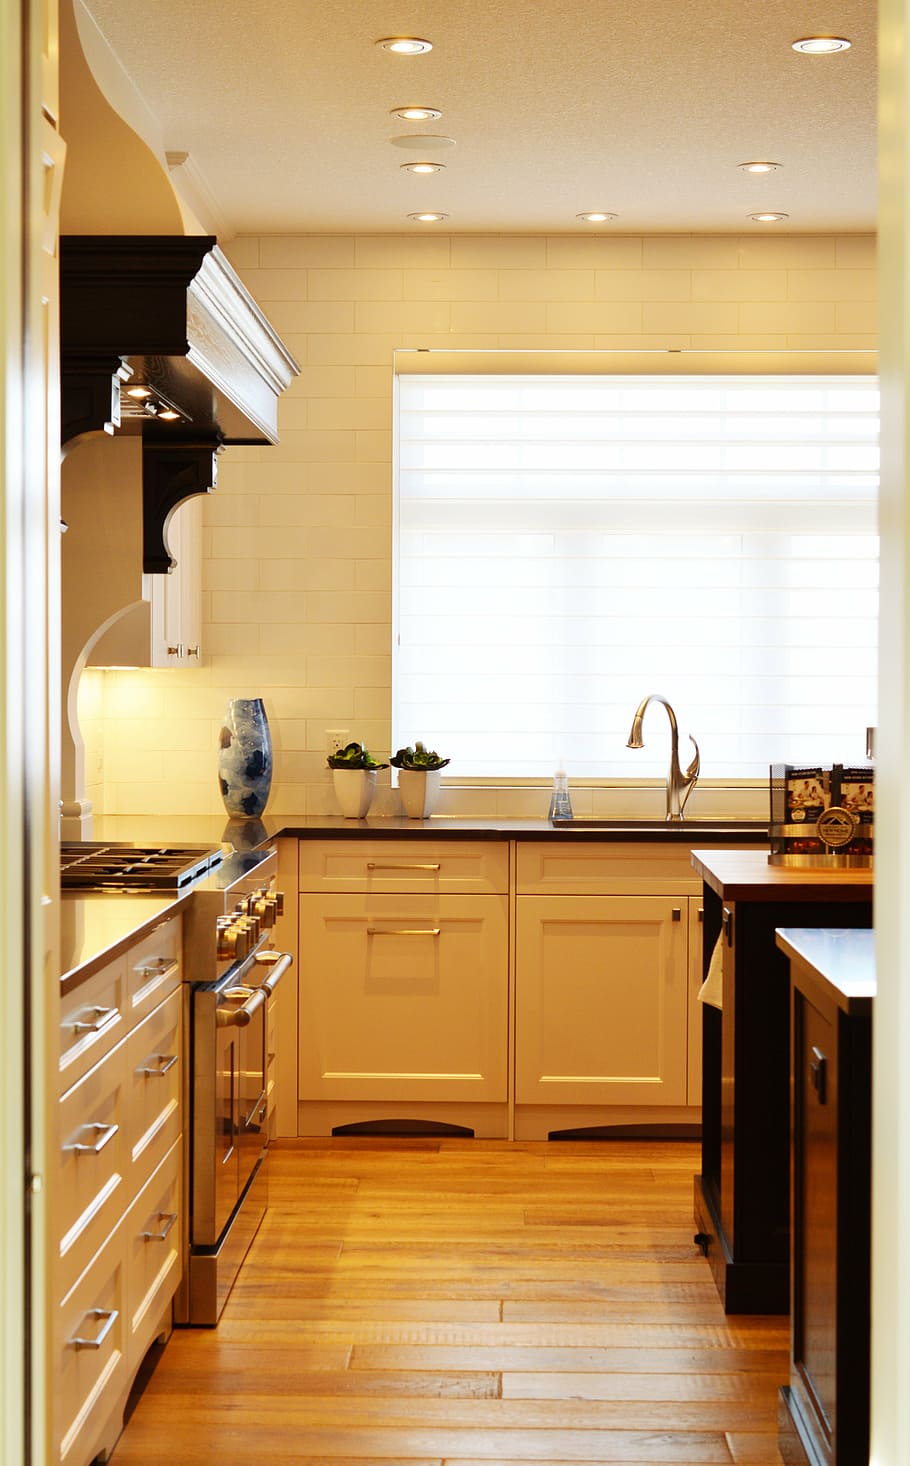 putih, kayu, lemari dapur, di belakang, dicat, dinding, dapur, counter, kompor, oven